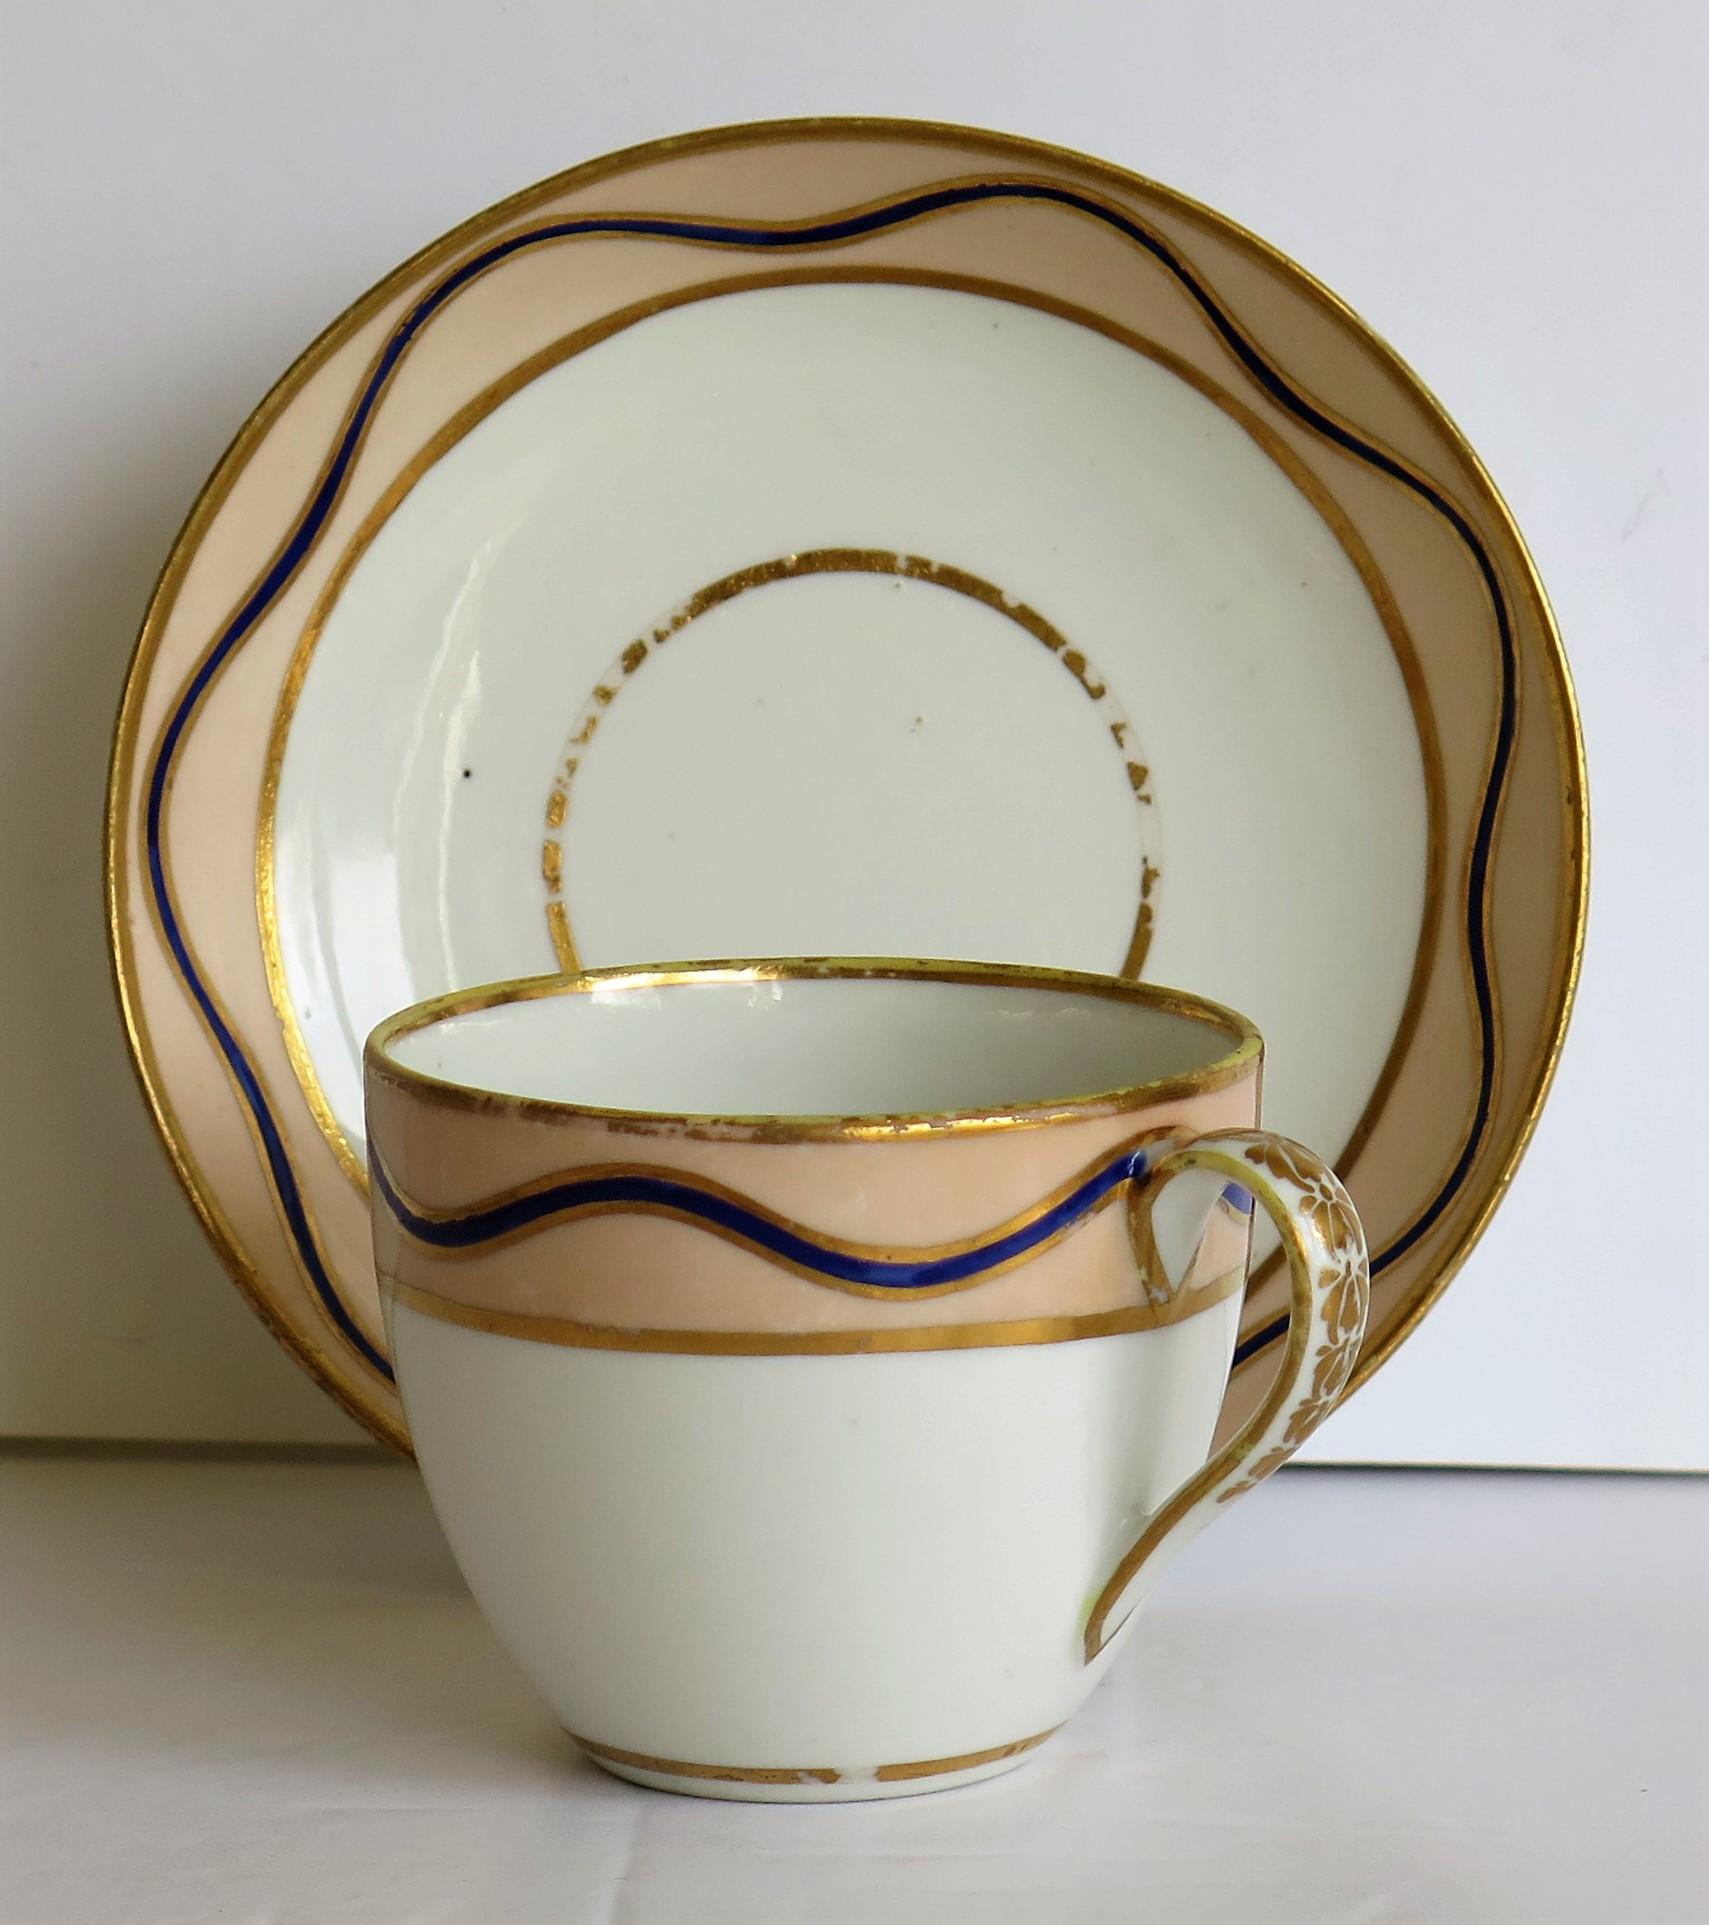 Il s'agit d'une tasse à thé et d'une soucoupe en porcelaine de la fin du XVIIIe siècle, modèle 128 de la manufacture de Derby, vers 1795.

Il s'agit d'un modèle Derby rare que nous n'avons jamais vu ou rencontré auparavant.

La tasse a la forme